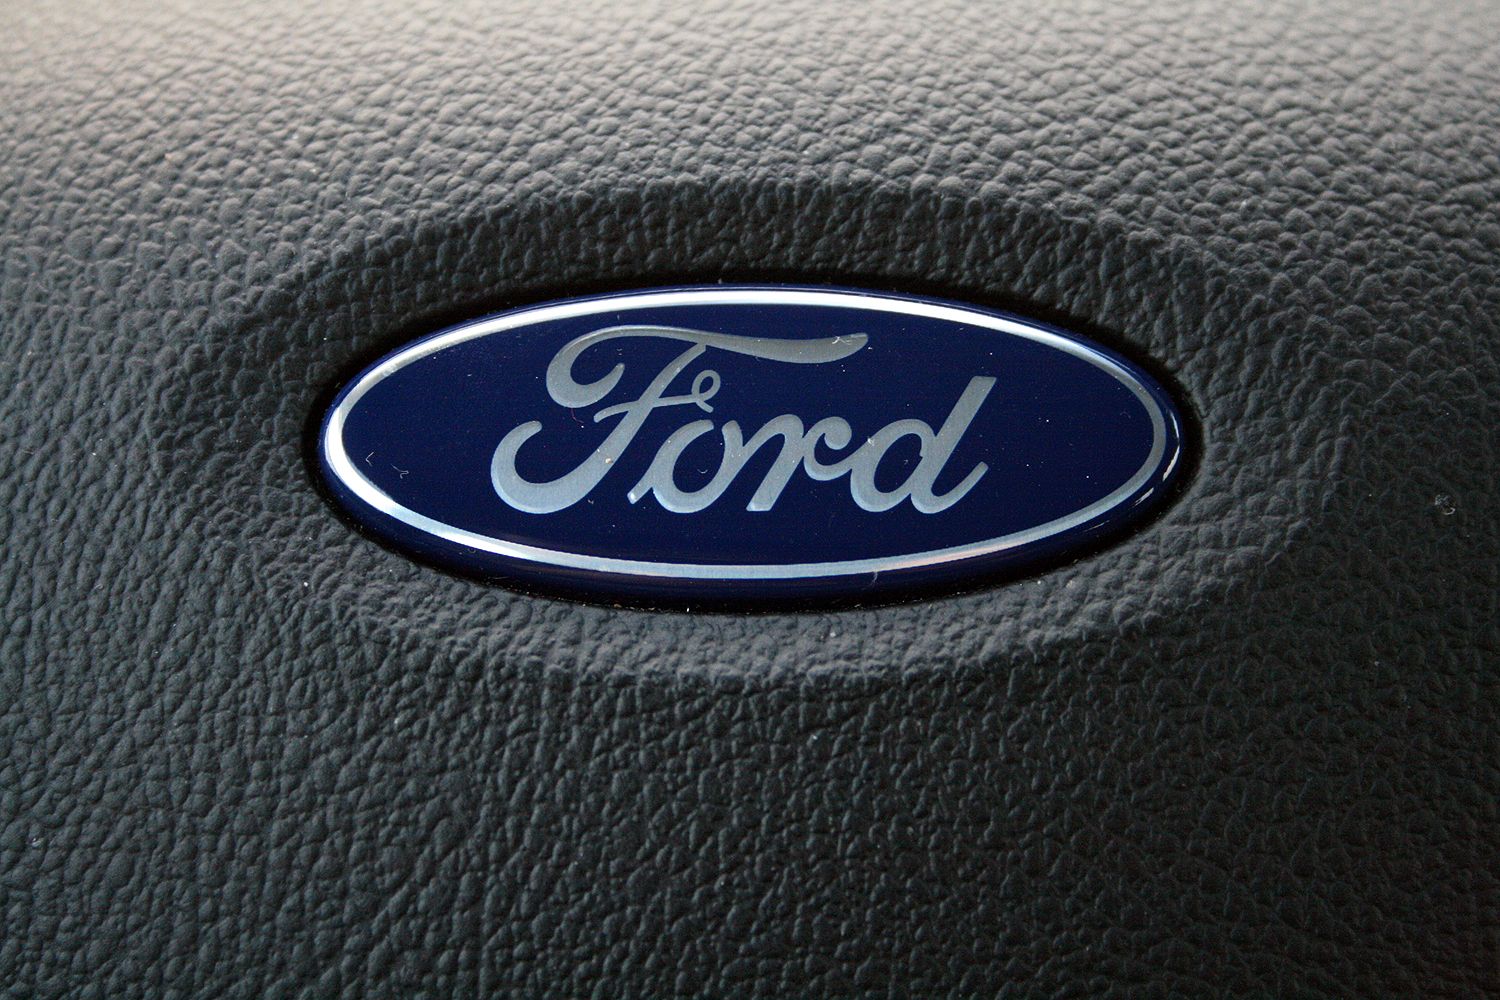 2015 Ford Focus Hatchback – Driven